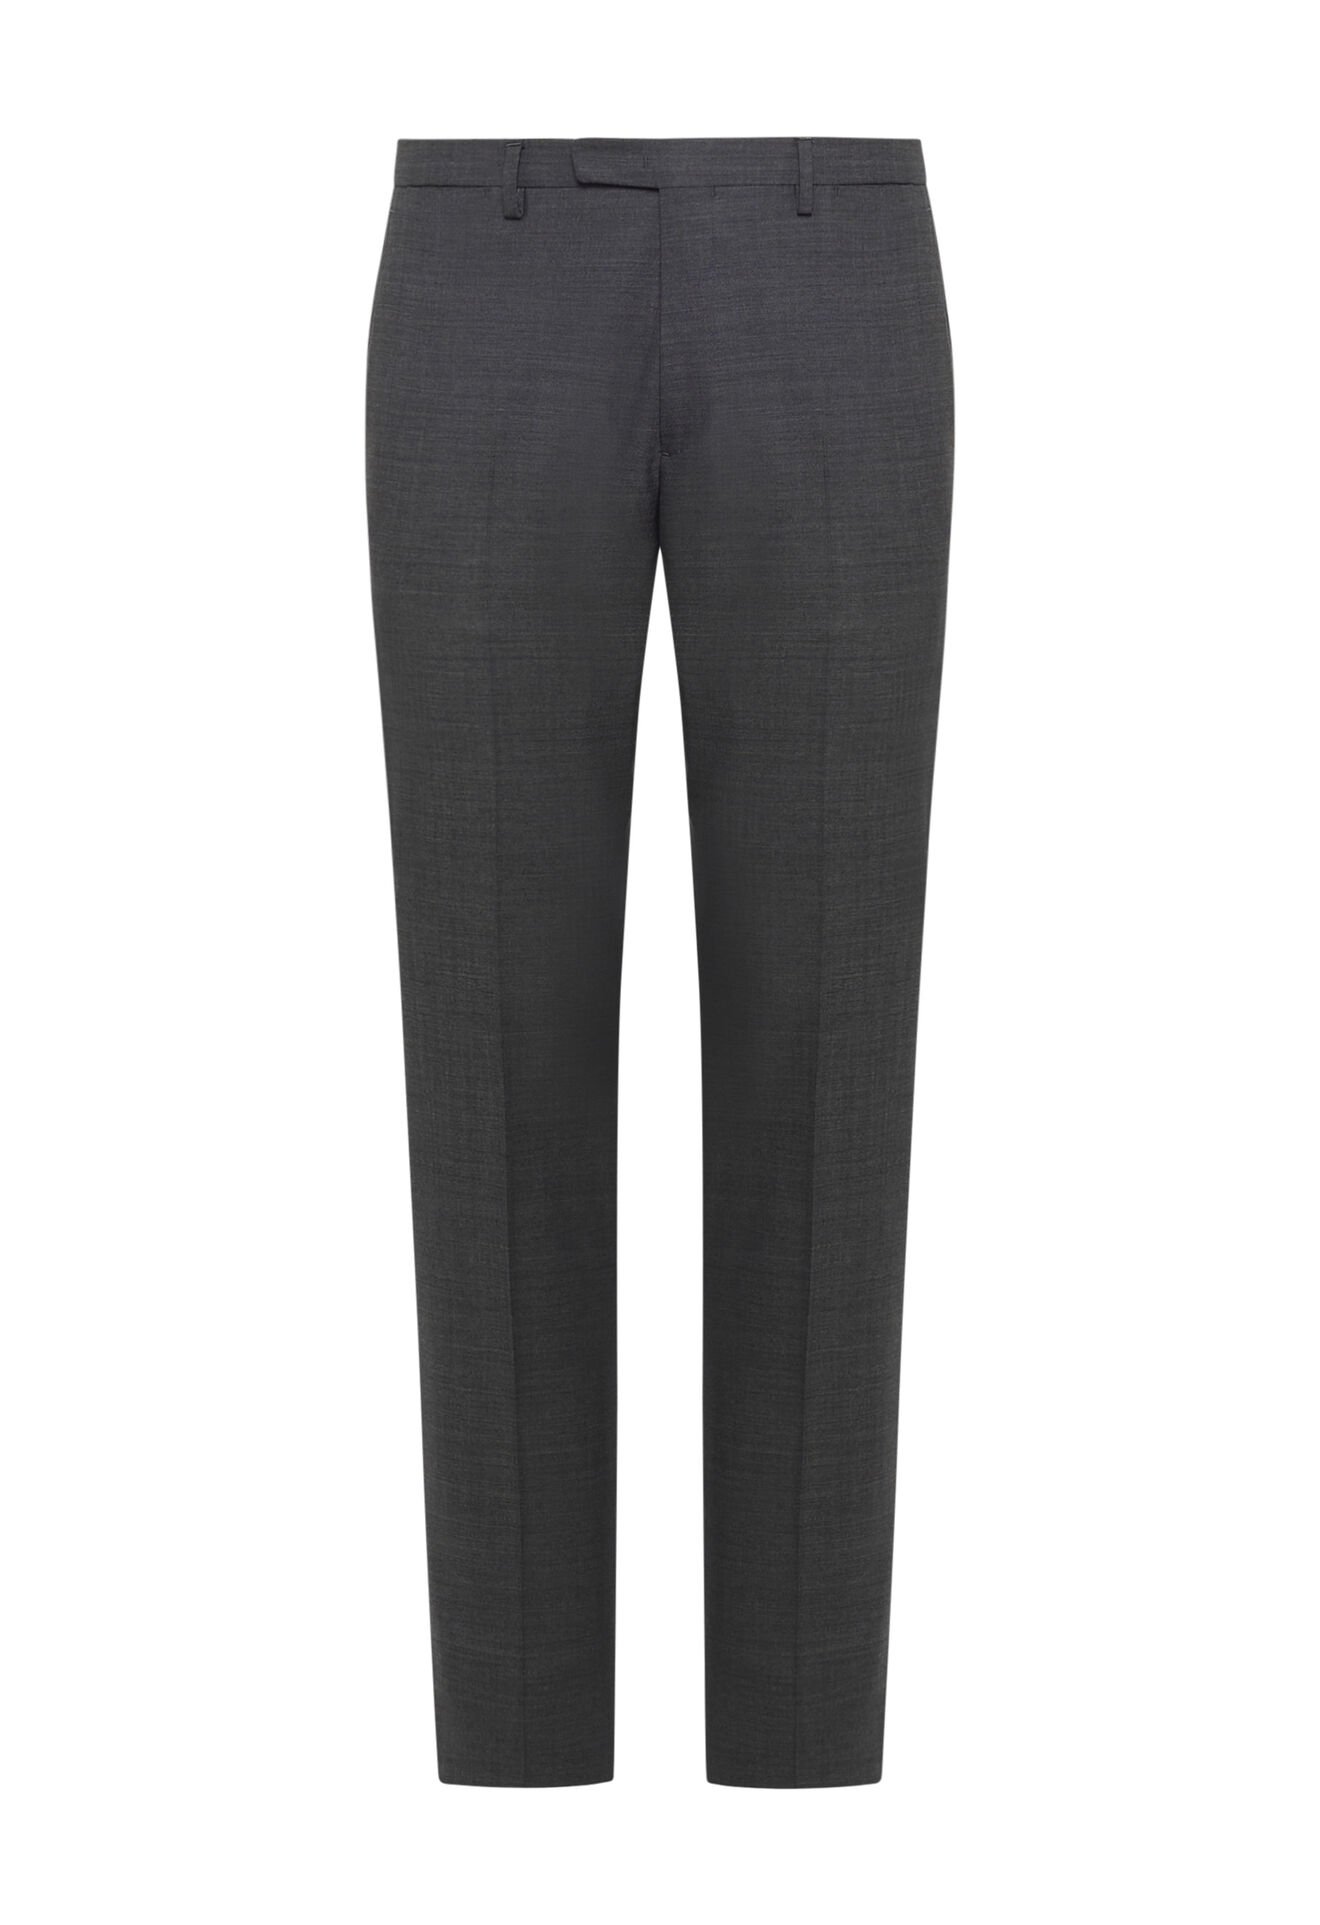 Grey 100% virgin wool trousers in Grey: Luxury Italian Trousers for Men